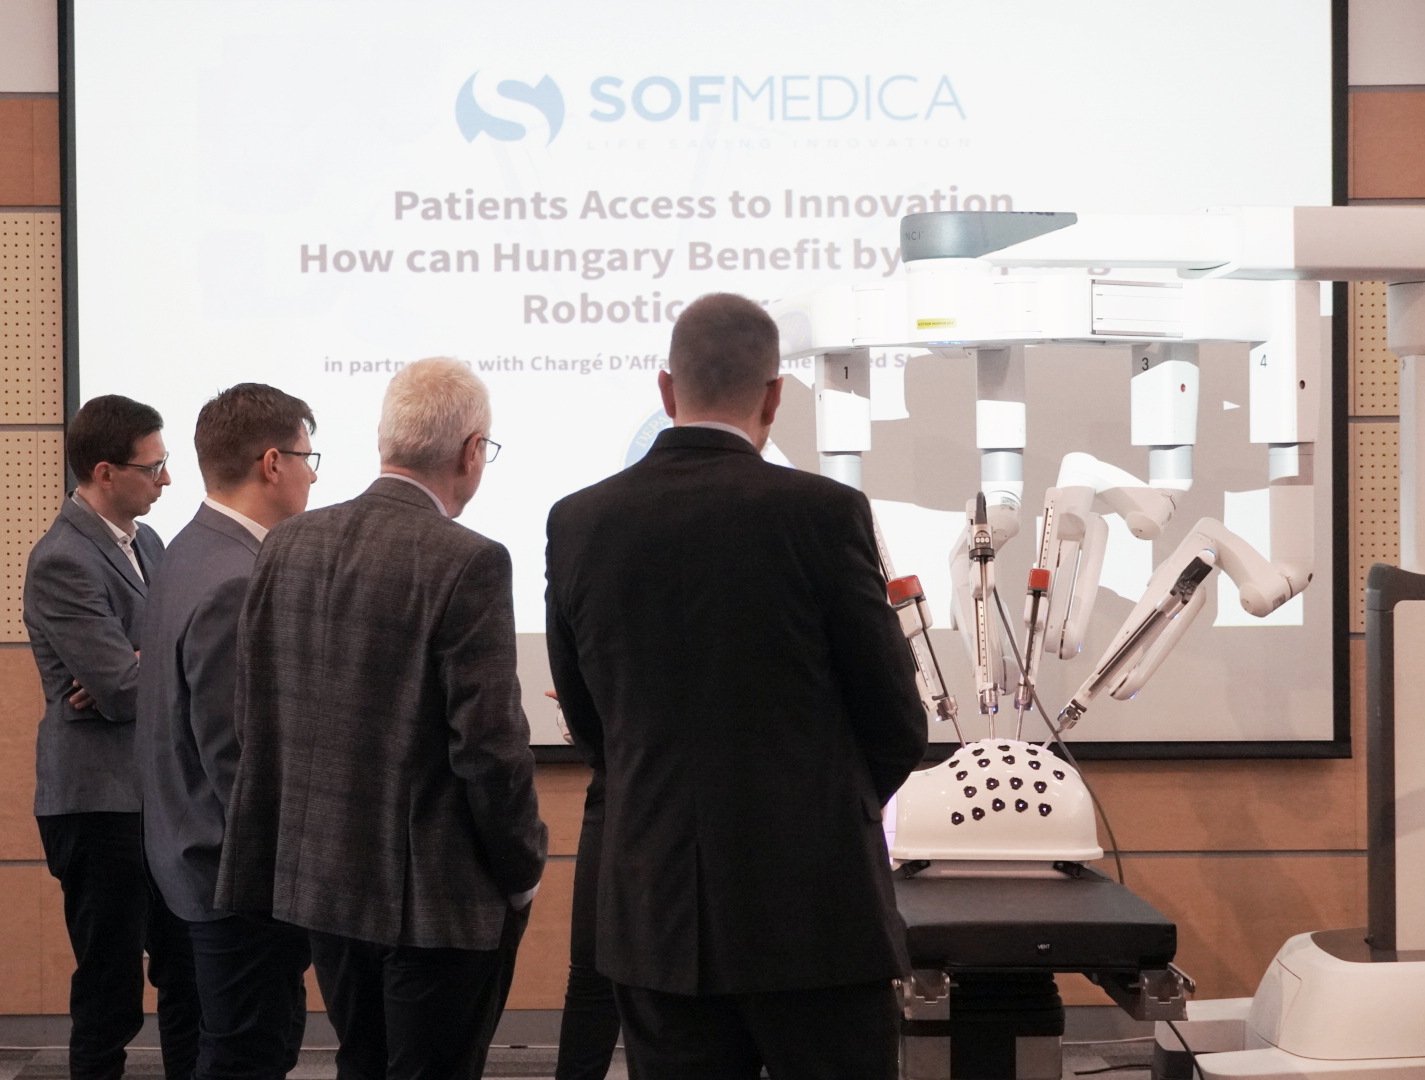 SOFMEDICA dezvaluie potentialul chirurgiei robotice in Ungaria